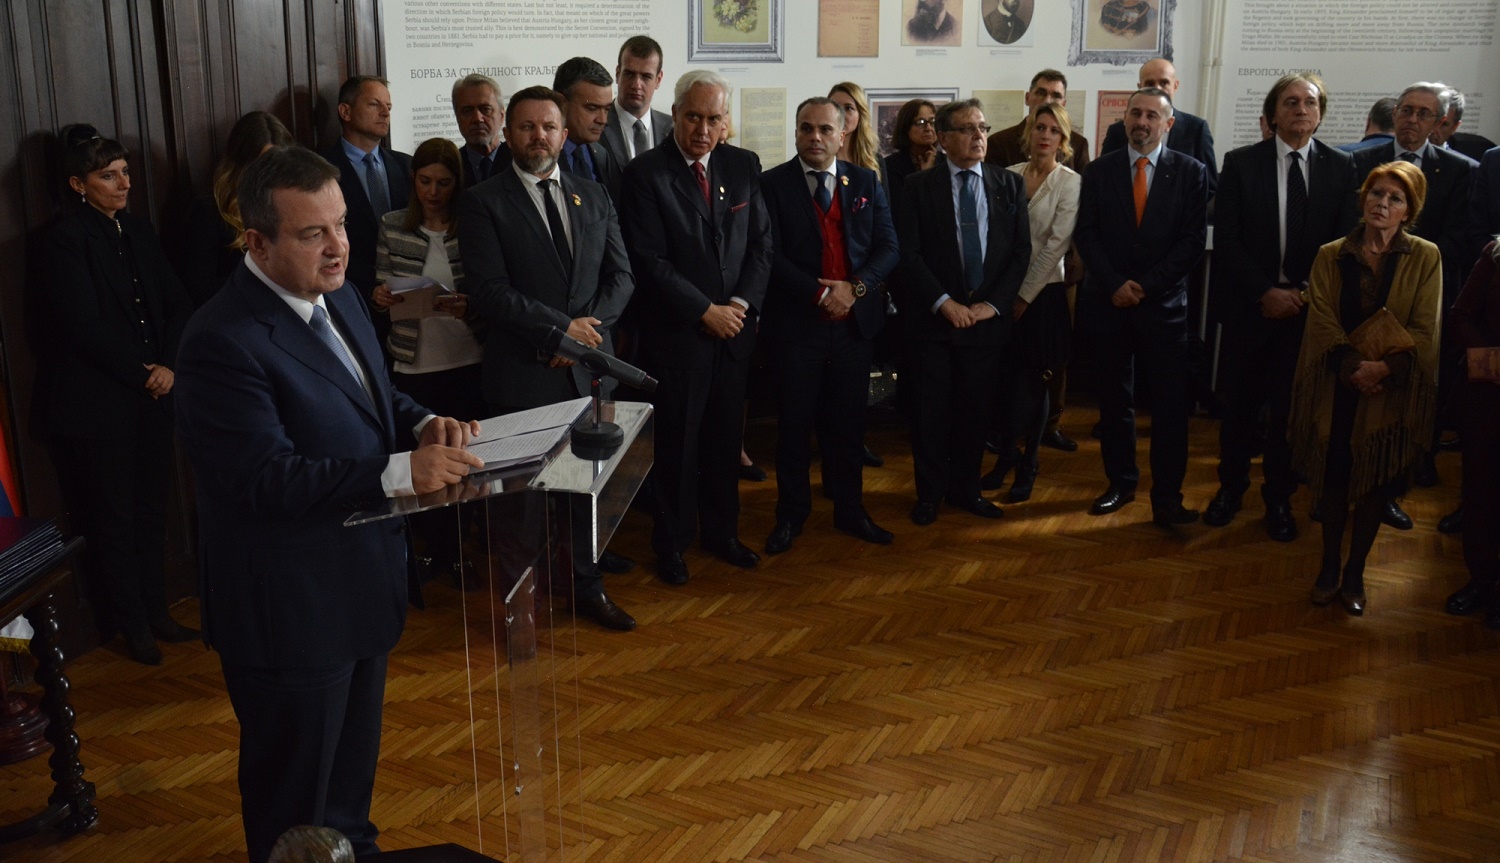 Otvaranje izložbe "Sva lica srpskog diplomate Nušića"